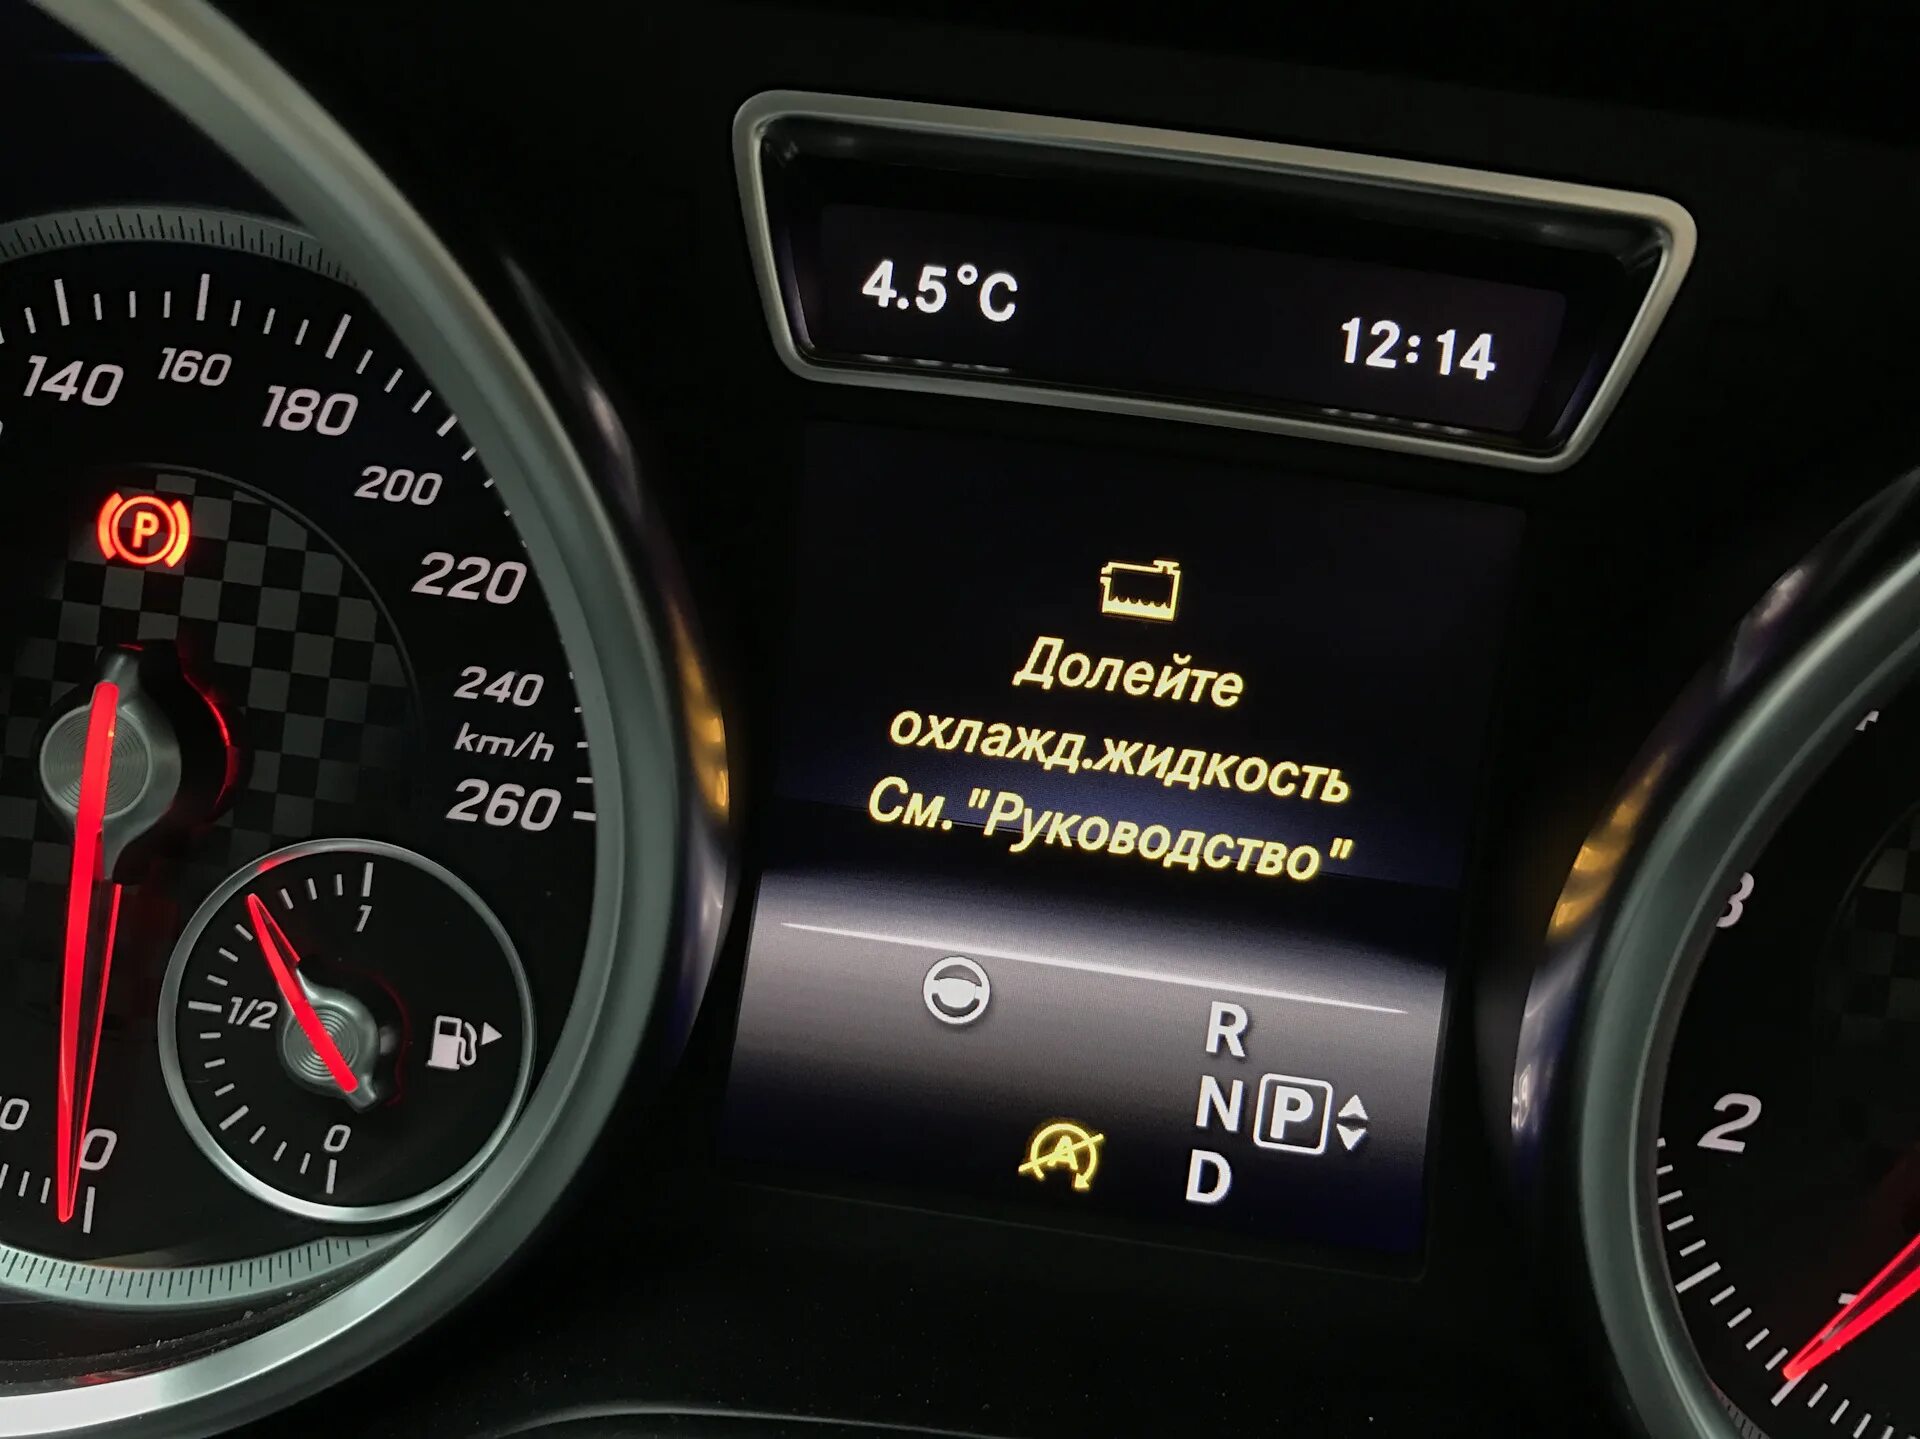 Mercedes-Benz c 200 охлаждающая жидкость. Mercedes Benz gl 350 2016 долейте охлаждающую жидкость. Индикатор уровня охлаждающей жидкости w222. Долейте охлаждающую жидкость Мерседес w204.